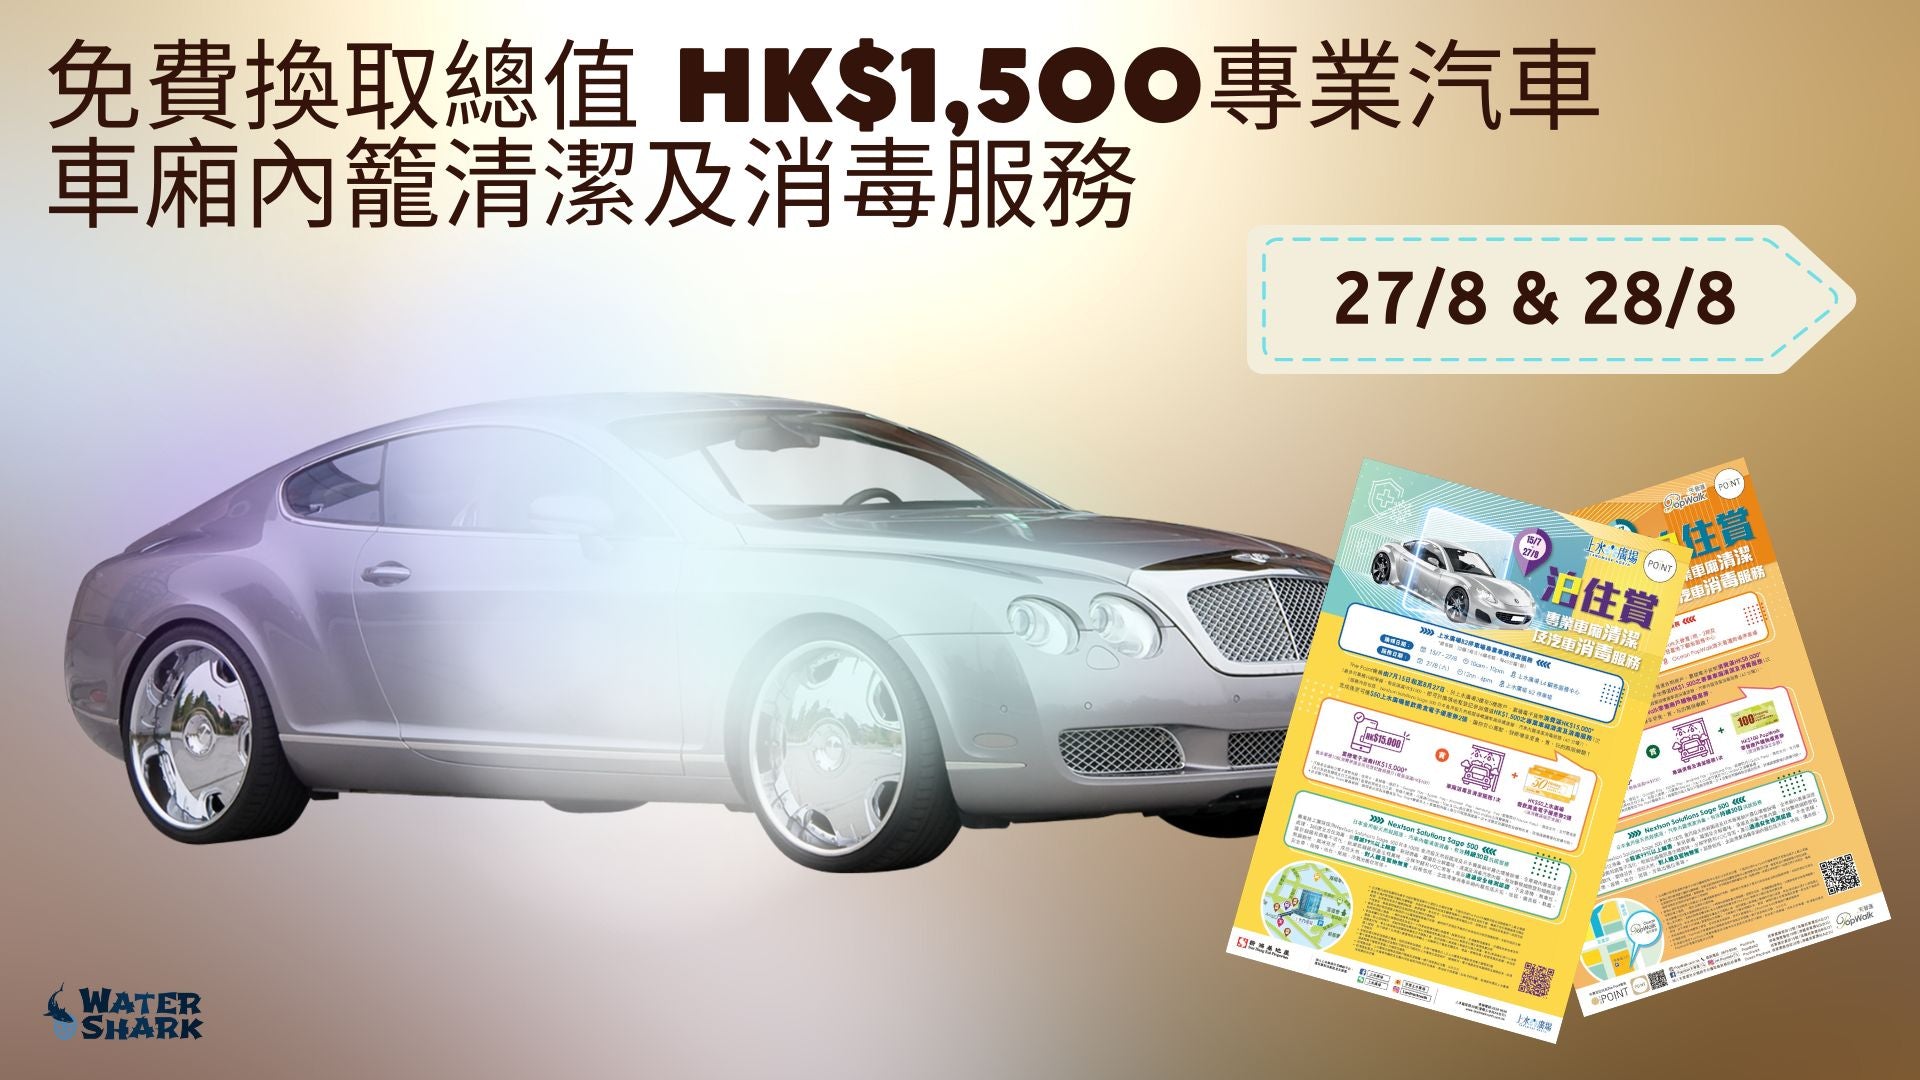 免費換取總值 HK$1,500的45分鐘專業汽車車廂內籠清潔及消毒服務